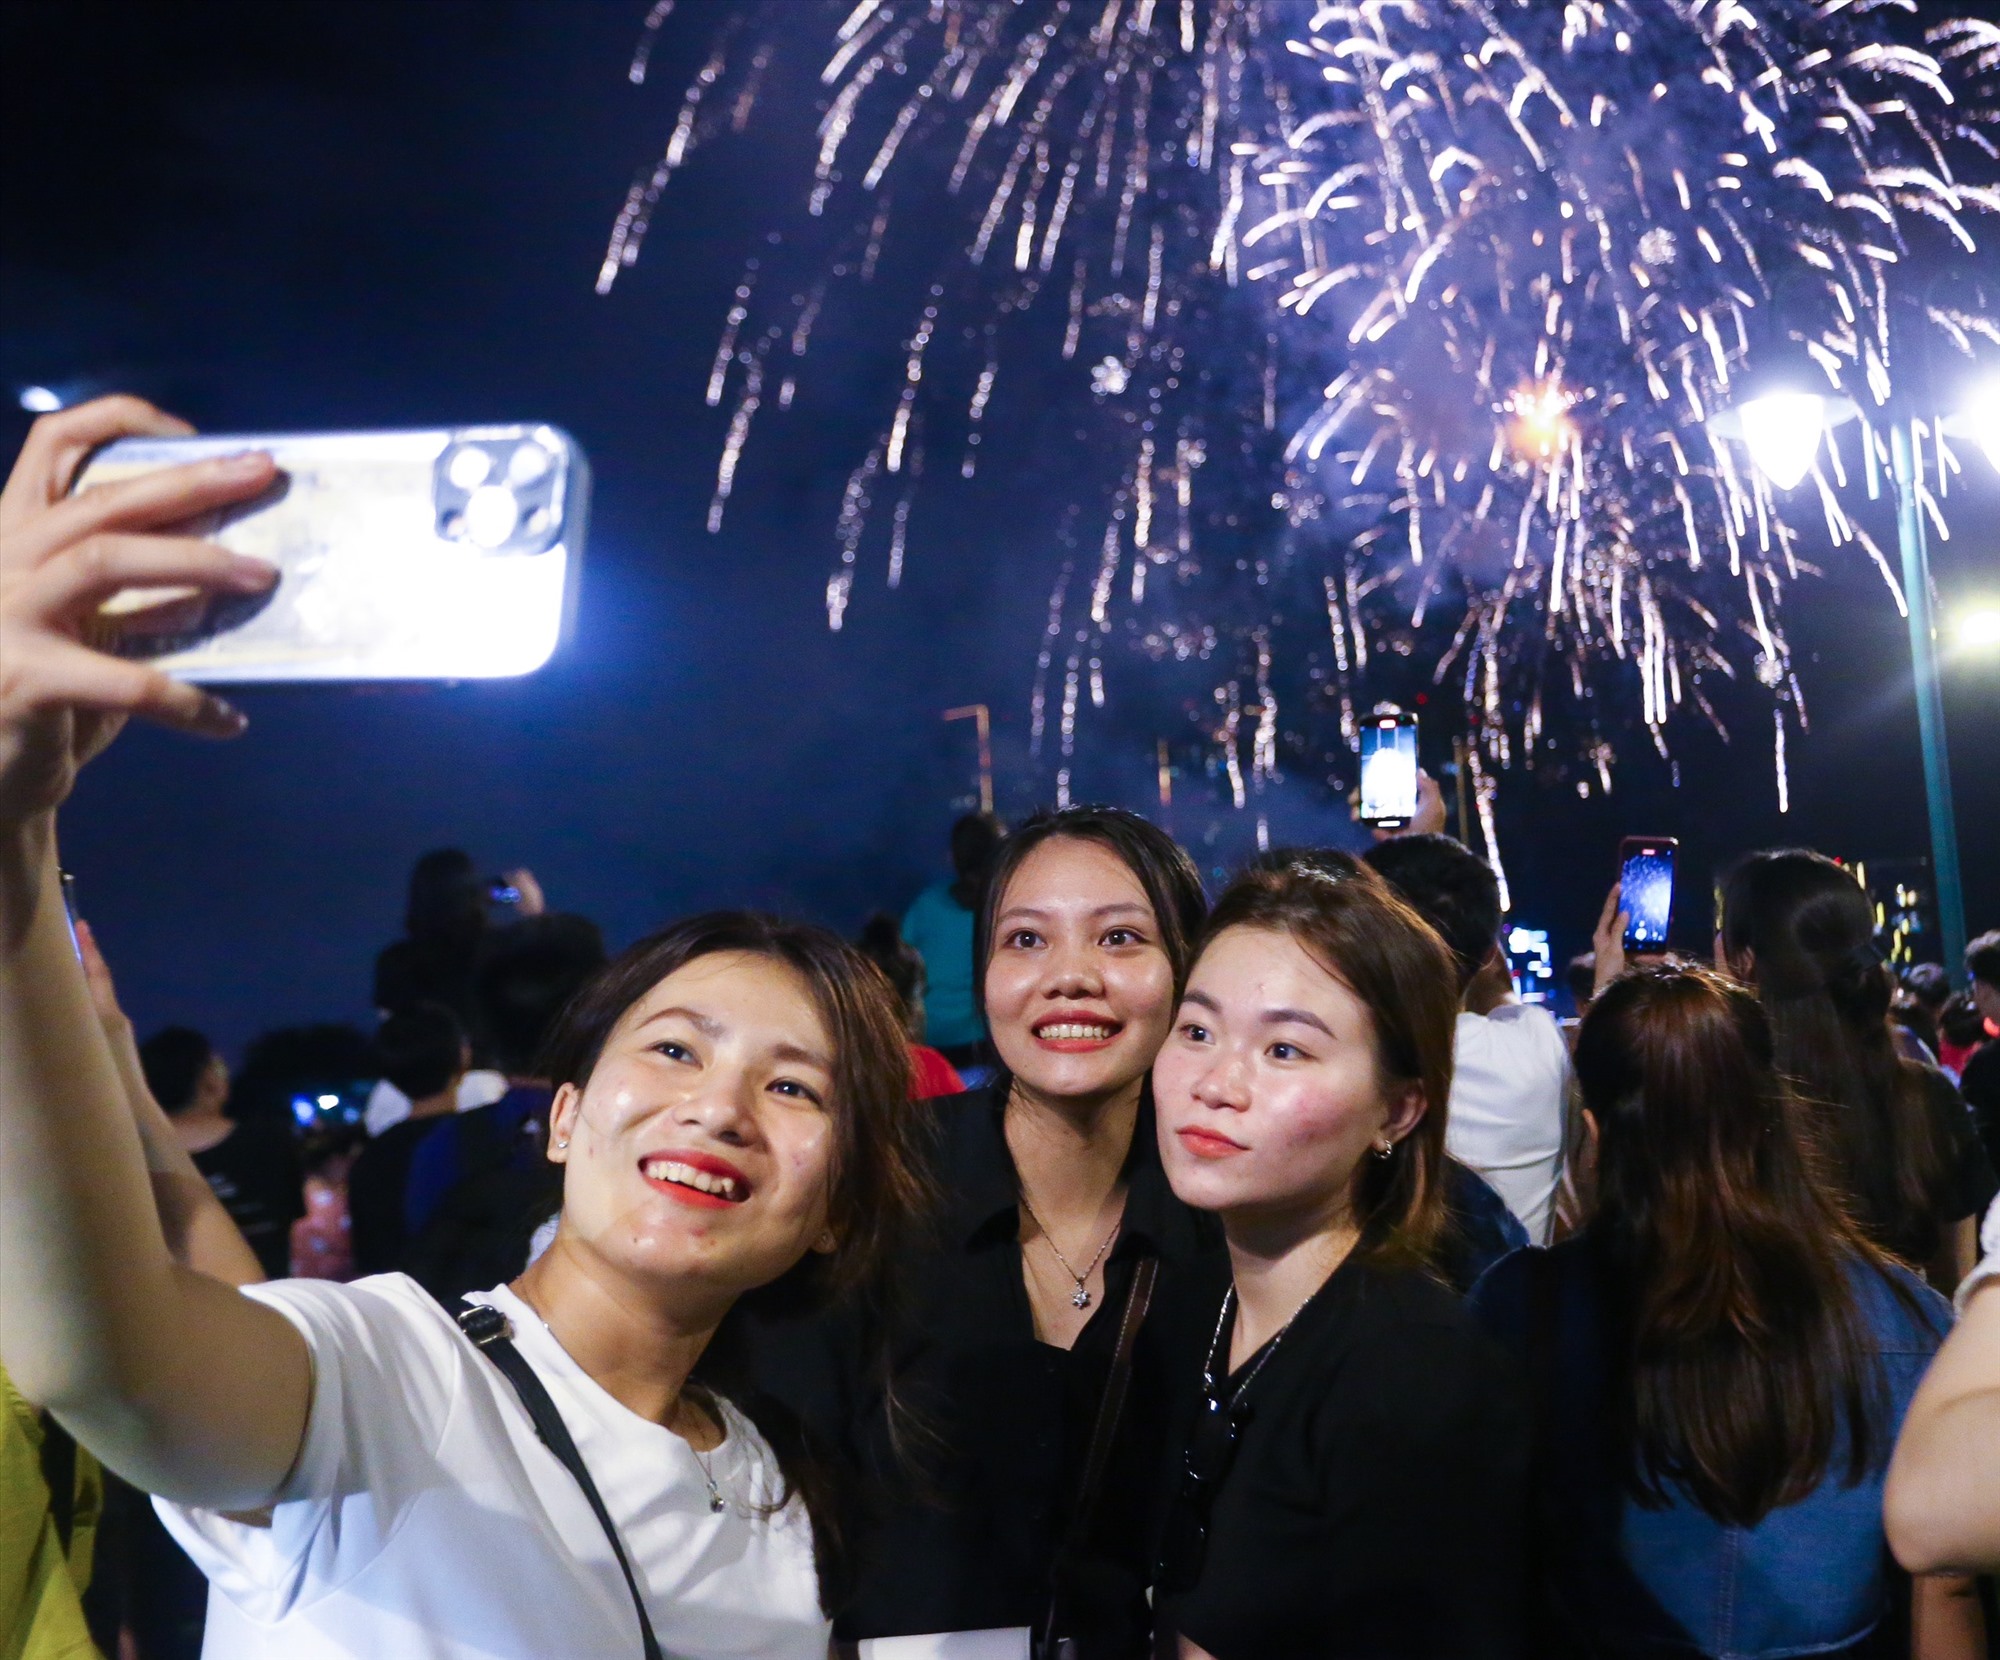    Người dân thể hiện cảm xúc ăn mừng bên những chùm pháo hoa tung ra rực sáng cả góc trời ở bến sông Sài Gòn. 